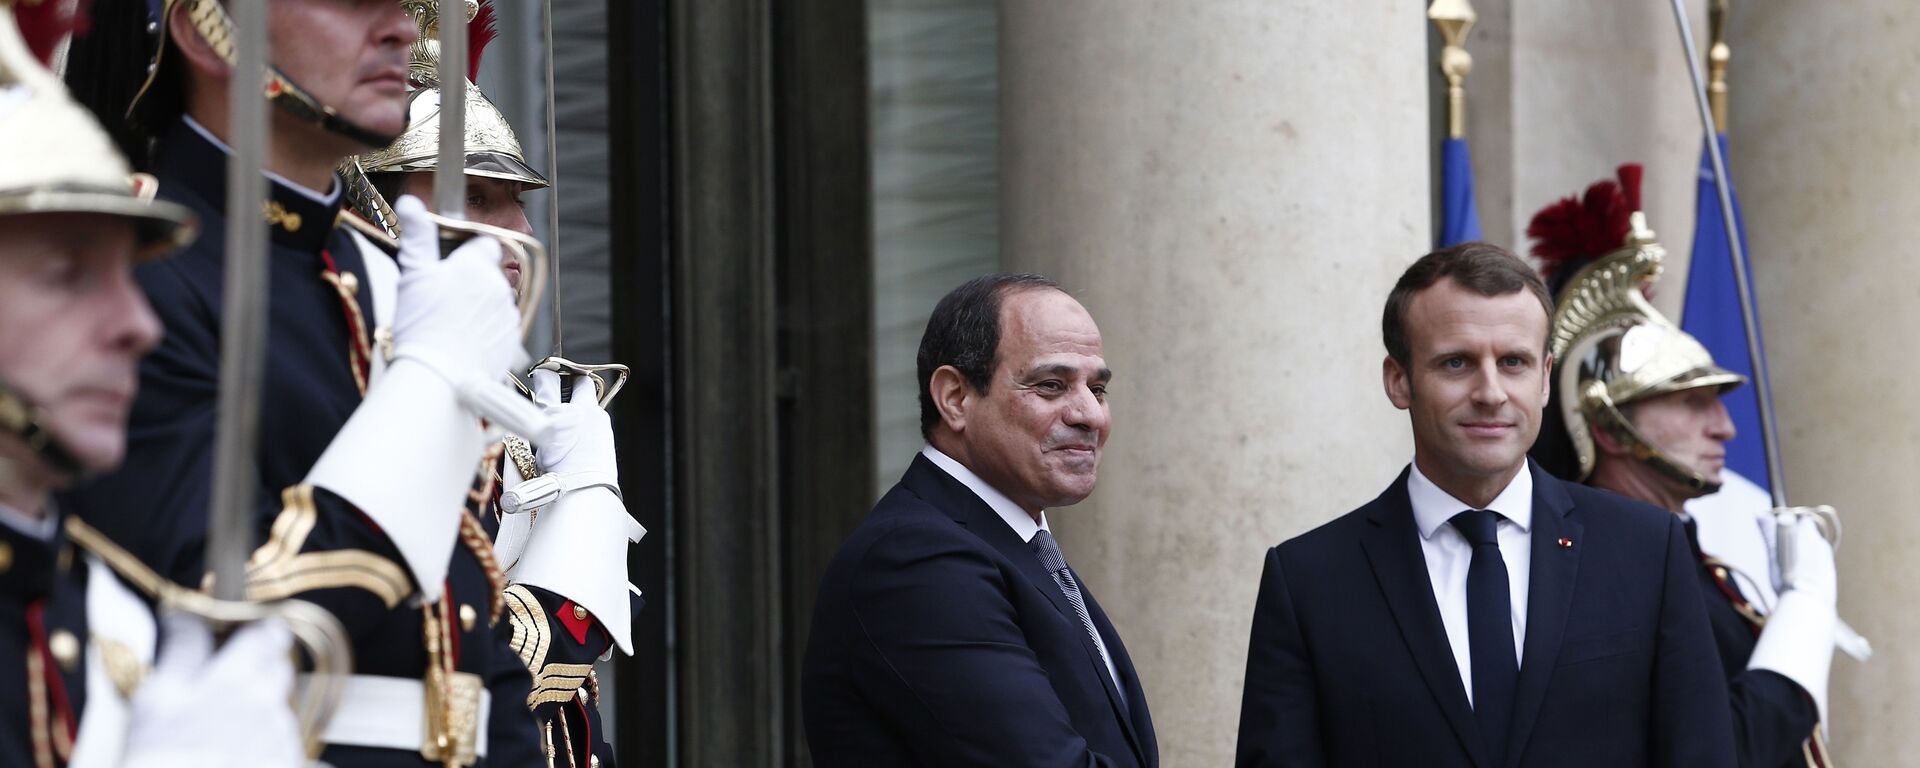  le président français Emmanuel Macron, à droite, accueille le président égyptien Abdel-Fattah el-Sissi sur les marches du palais présidentiel de l'Élysée à Paris - Sputnik Afrique, 1920, 24.11.2021